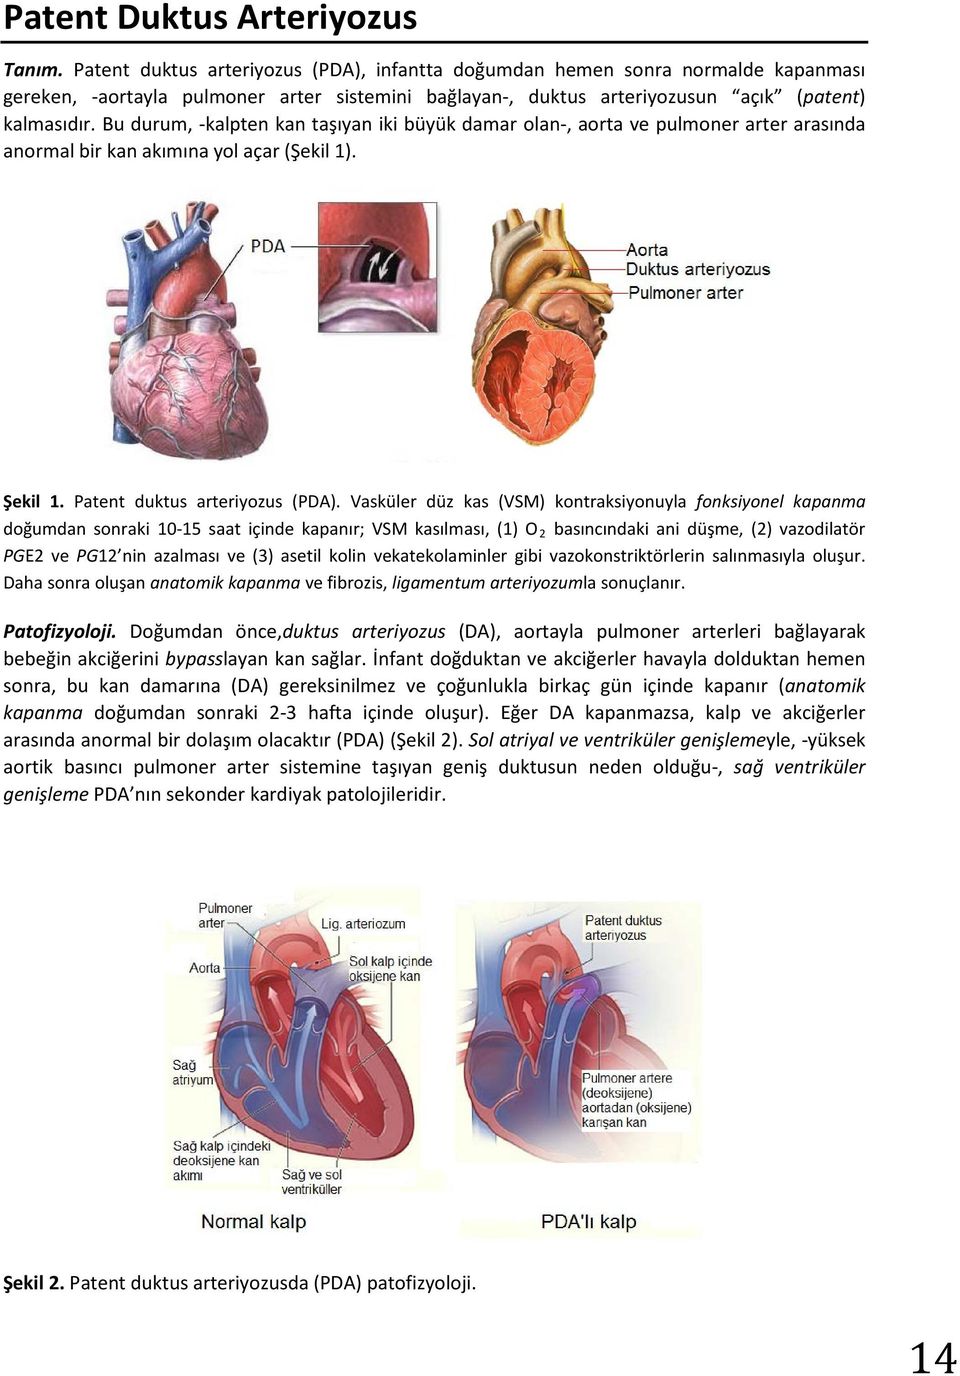 Bu durum, -kalpten kan taşıyan iki büyük damar olan-, aorta ve pulmoner arter arasında anormal bir kan akımına yol açar (Şekil 1). Şekil 1. Patent duktus arteriyozus (PDA).